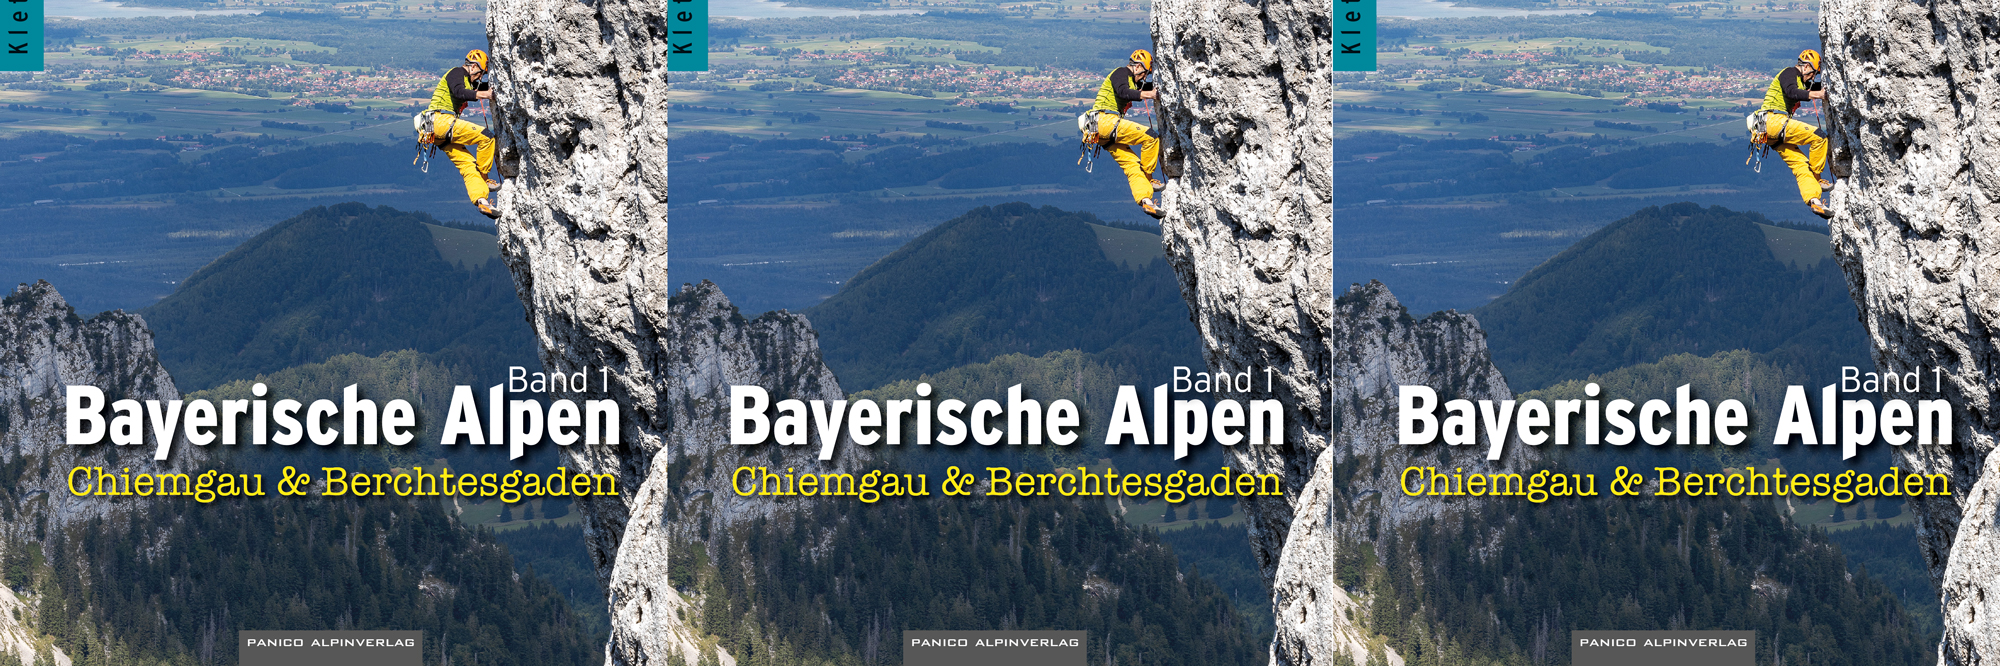 Kletterführer Bayerische Alpen Band 1 - Chiemgau & Berchtesgaden